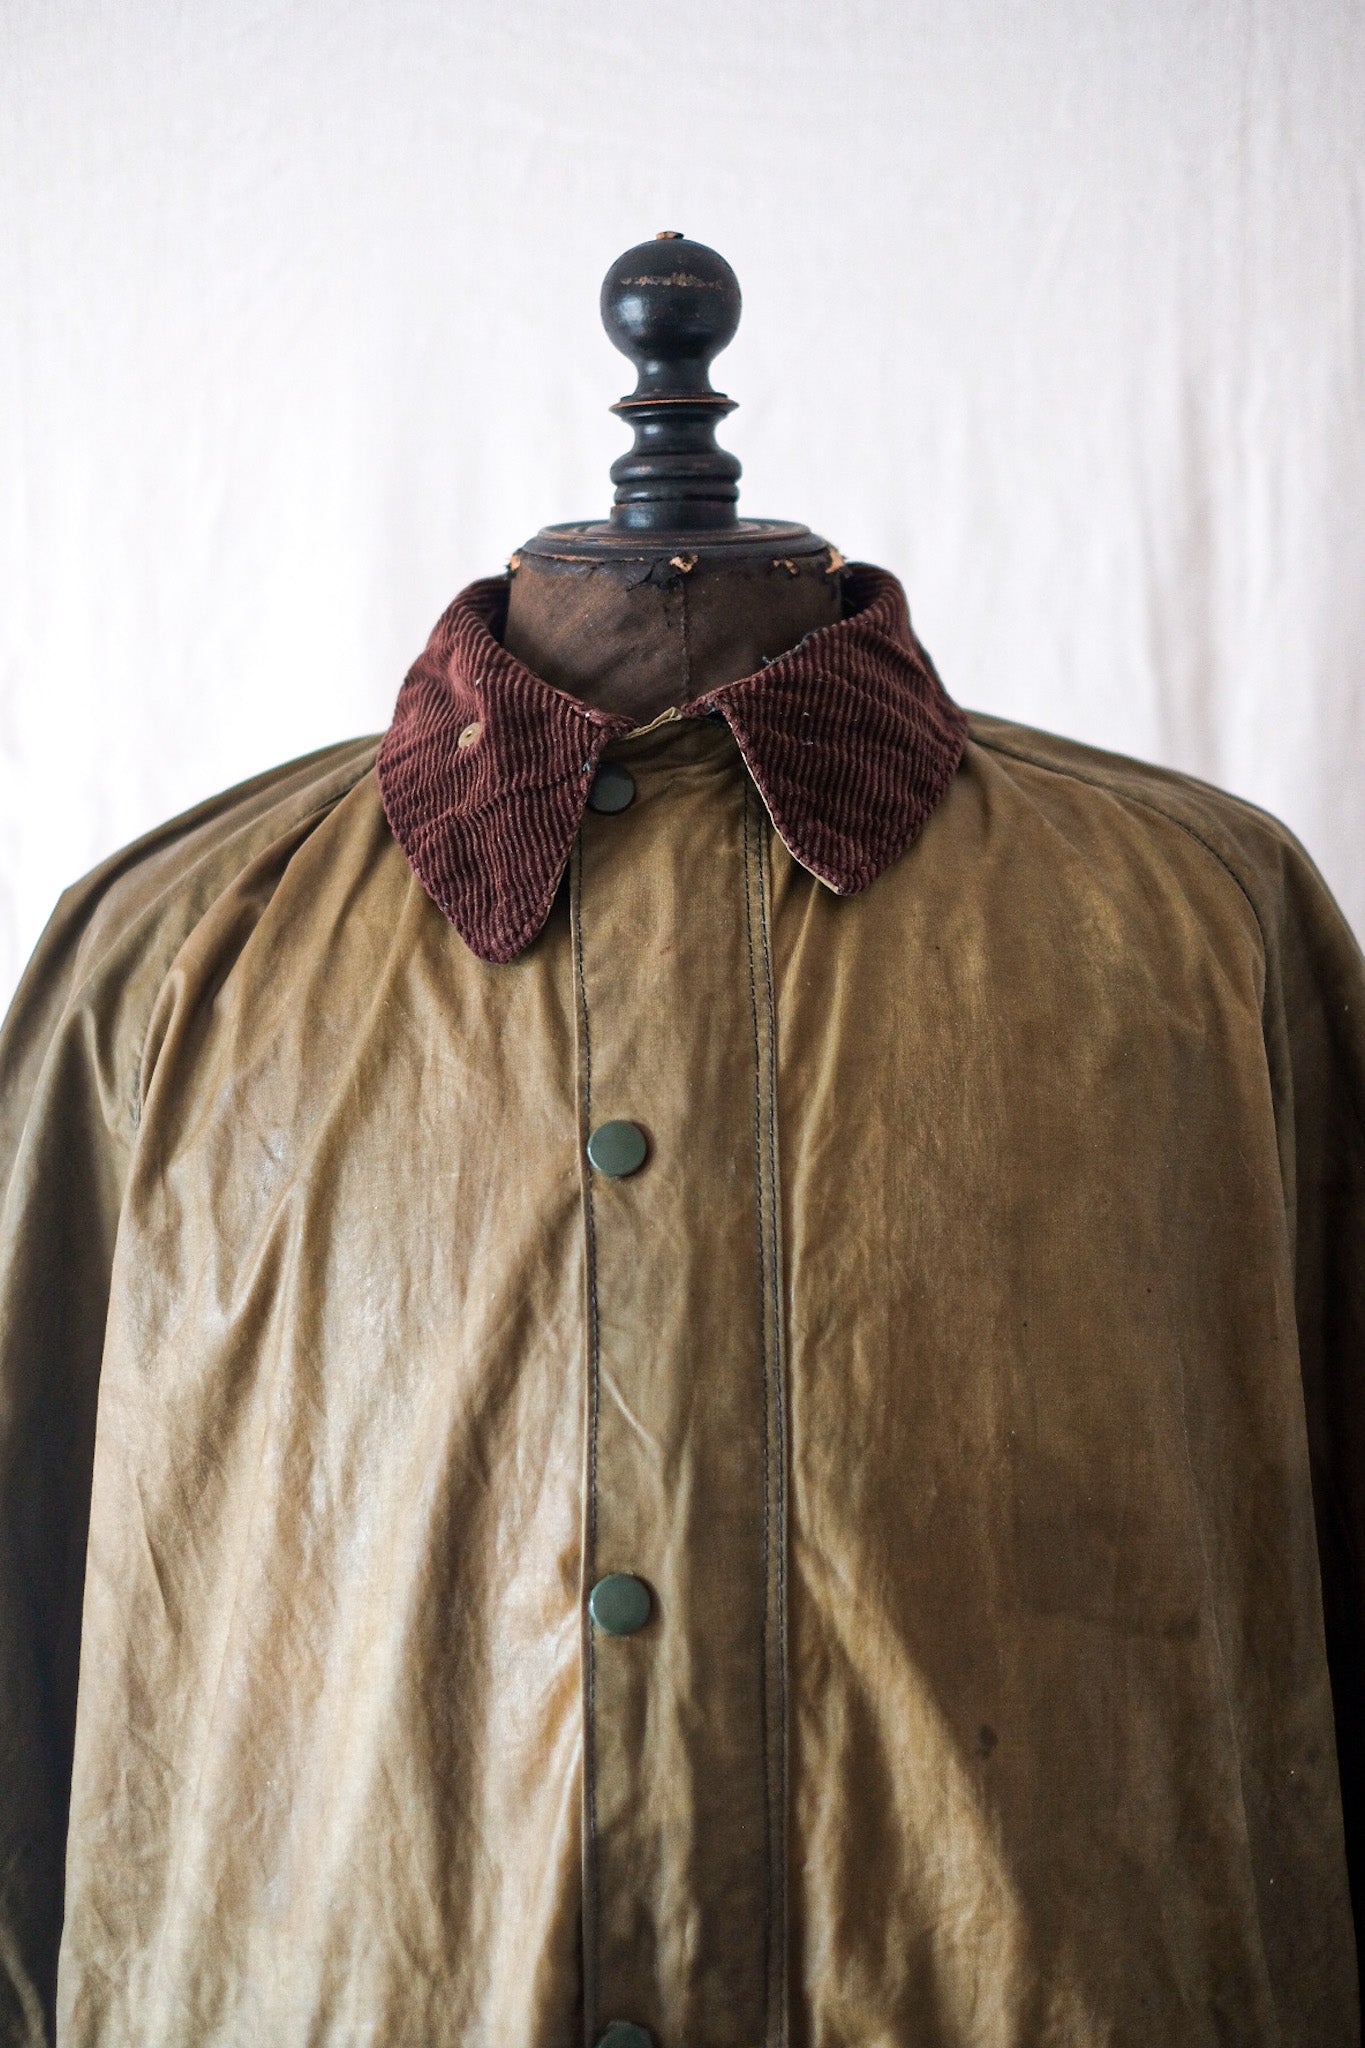 [~ 70's] Vintage Barbour "Gamefair Jacket" 1 Crest